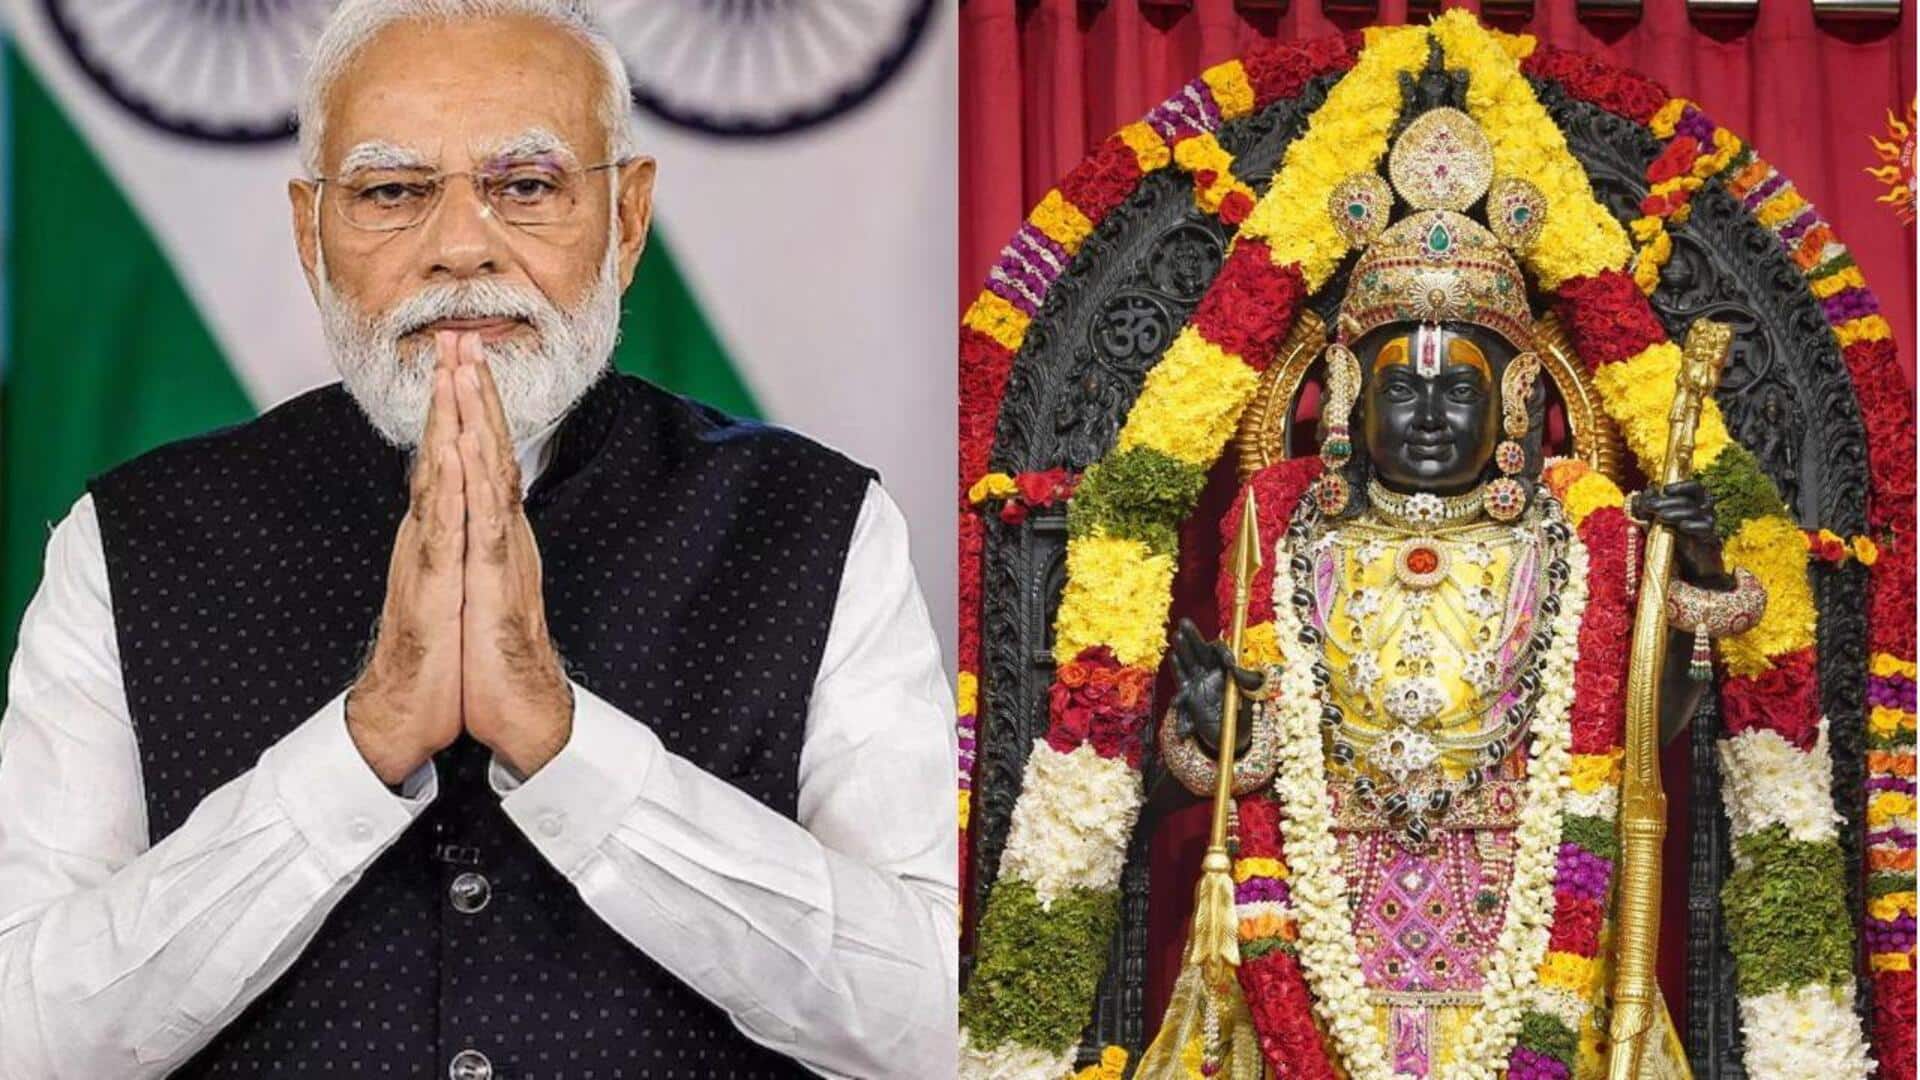 Shri Ram Navami: రామ్‌లల్లా కొలువుదీరిన తర్వాత జరుగుతున్న తొలి శ్రీరామనవమి.. దేశ ప్రజలకు ప్రధాని శ్రీరామనవమి శుభాకాంక్షలు 